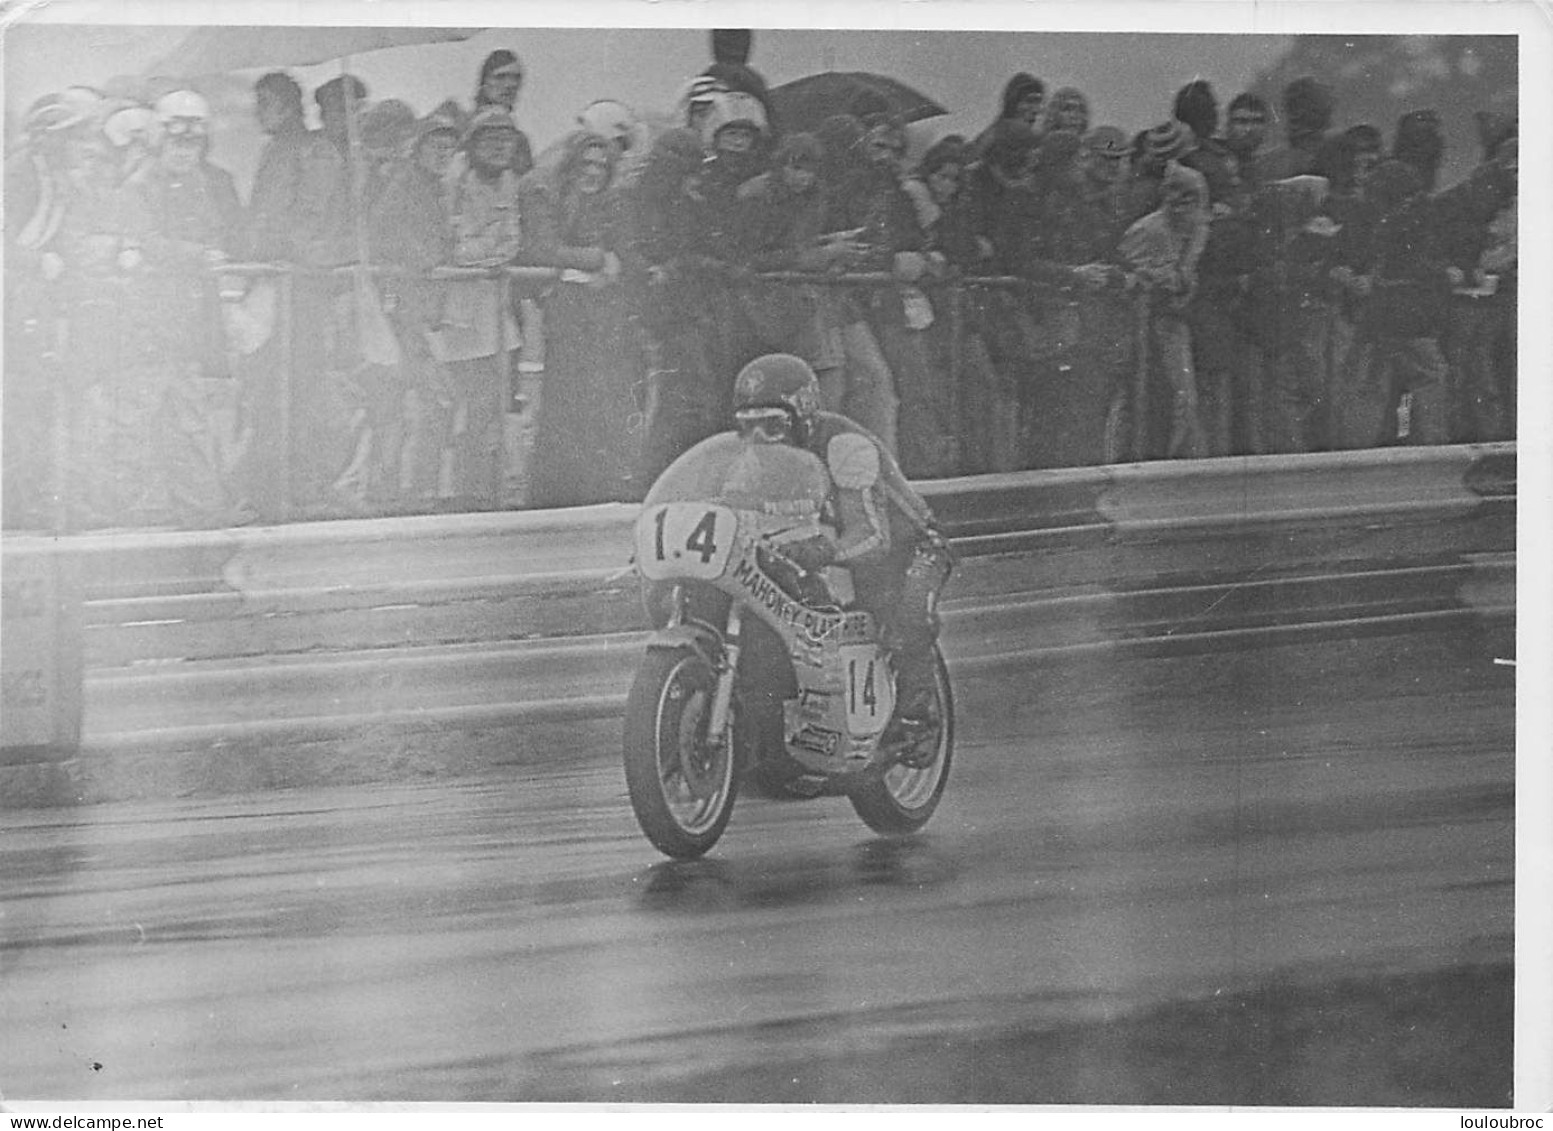 PILOTE MOTO PAT MAHONEY COURSE DE L'ANNEE 1974  RACE OF THE YEAR PHOTO DE PRESSE ORIGINALE 18X13CM - Sport